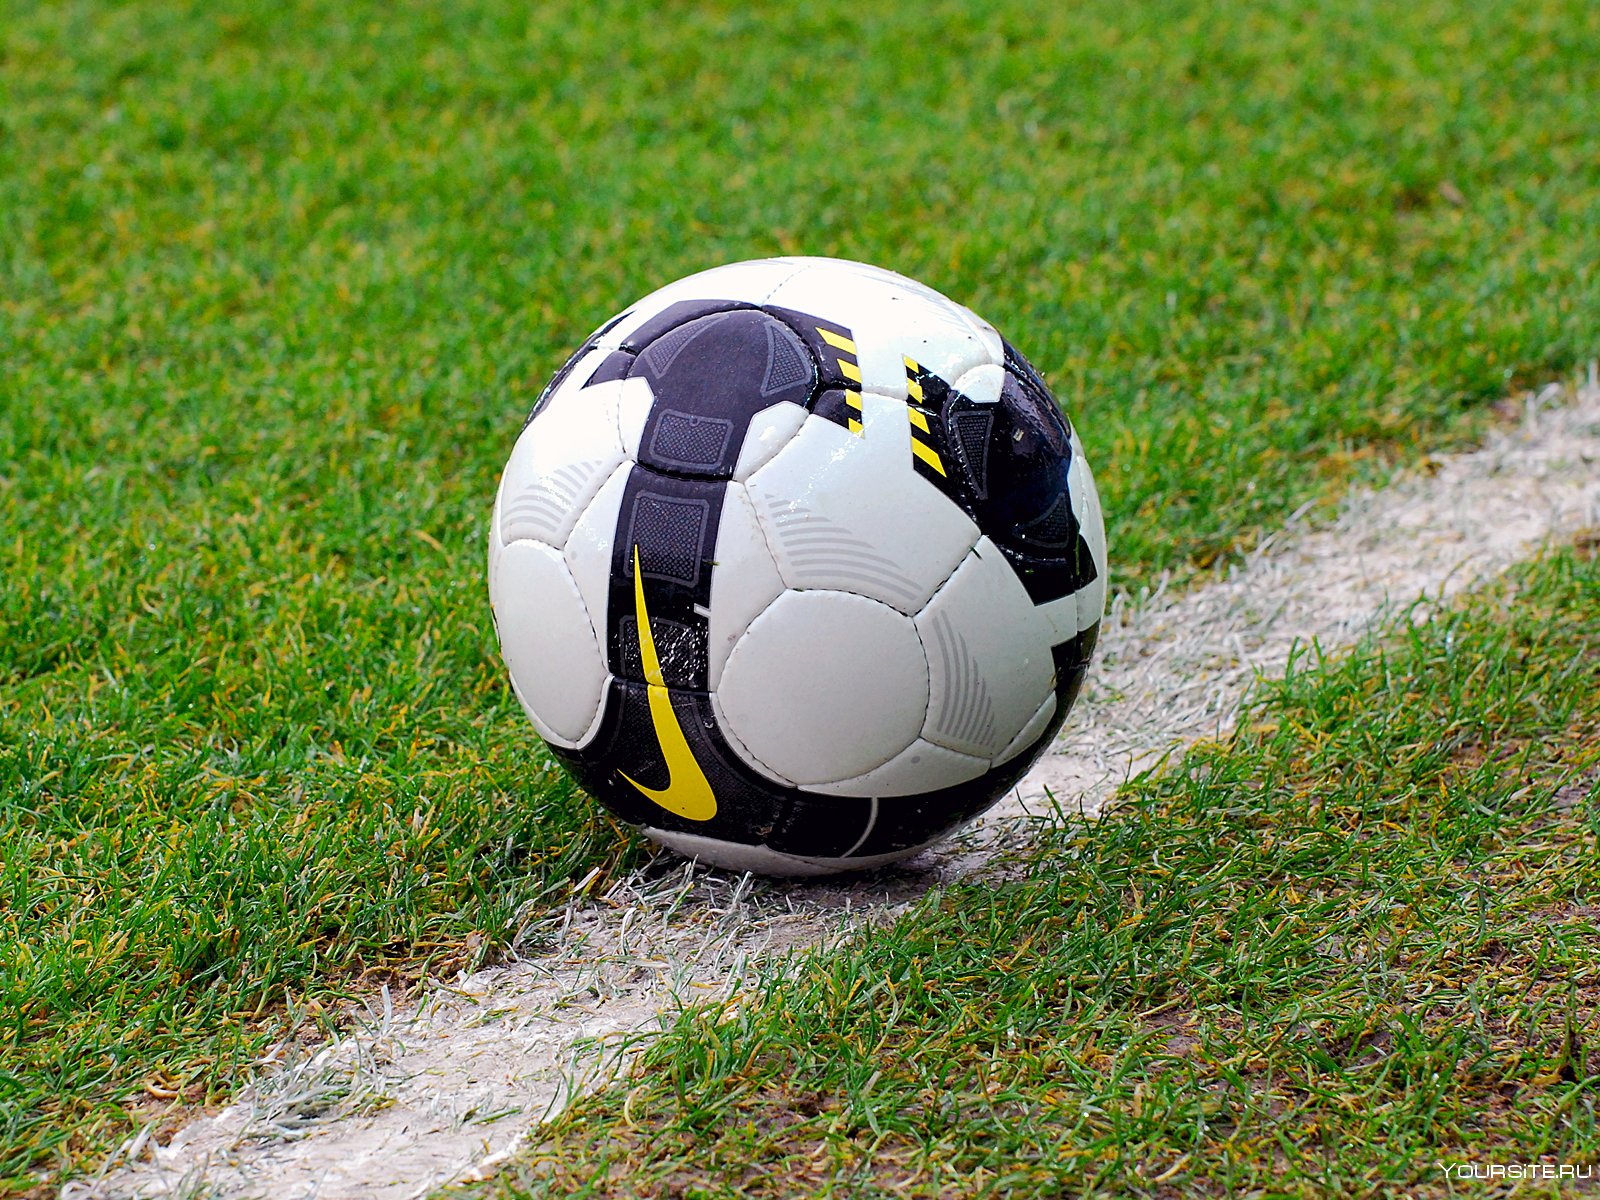 Игры футбольные мячи 3. Футбольный мяч. Футбольный мячик. Современный футбольный мяч. Футбольный мяч на траве.